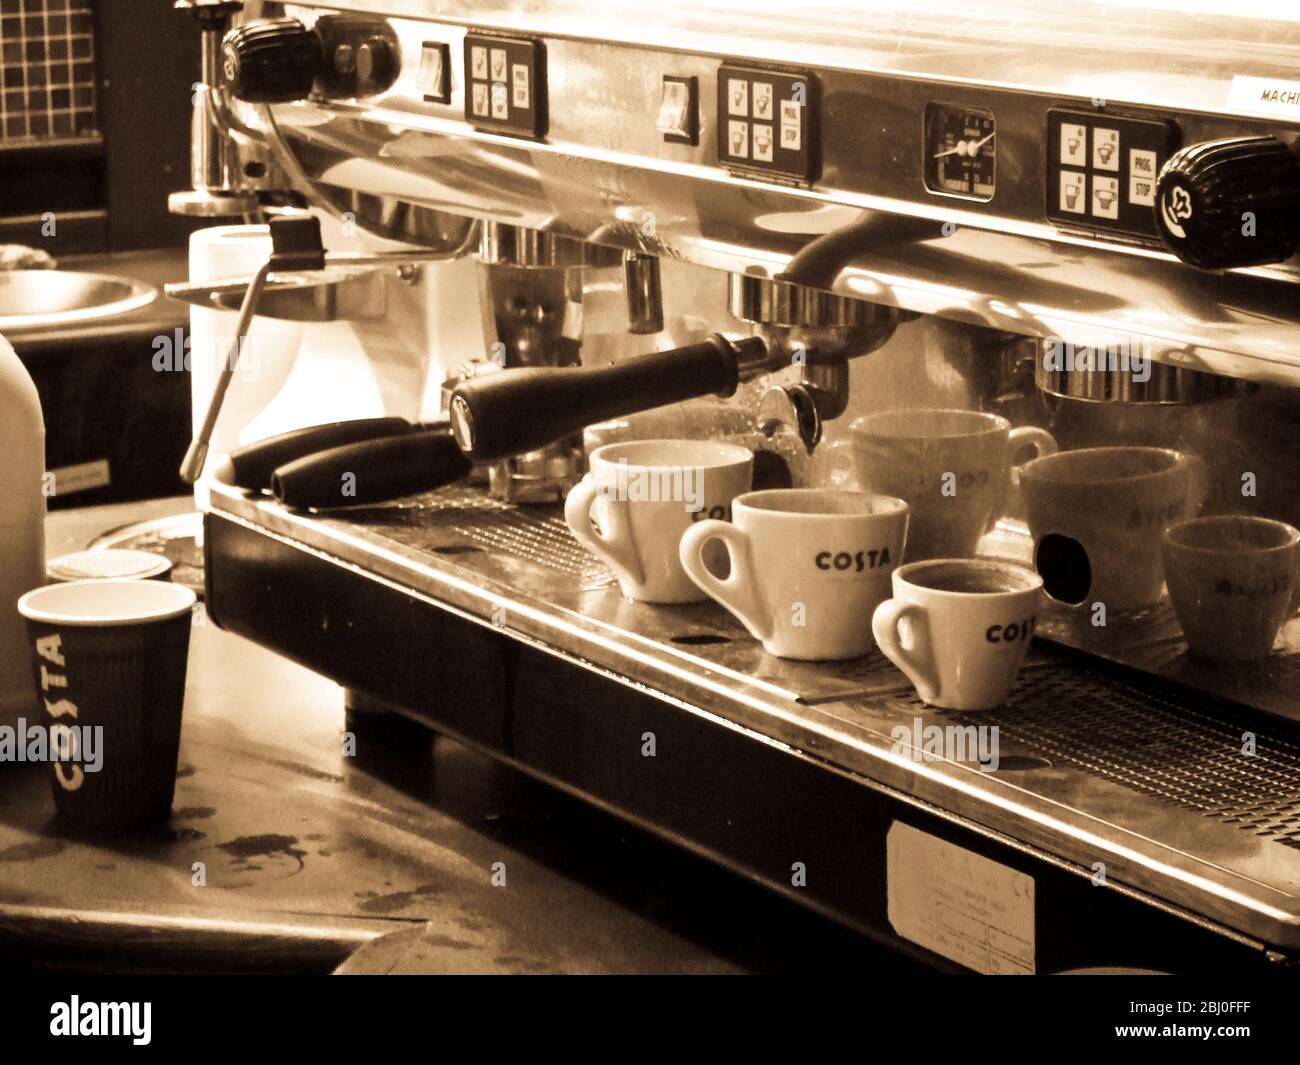 Details der Innenausstattung des Costa Coffee Shop an der Autobahnzufahrt, wo die Espressomaschine zu sehen ist. - Stockfoto